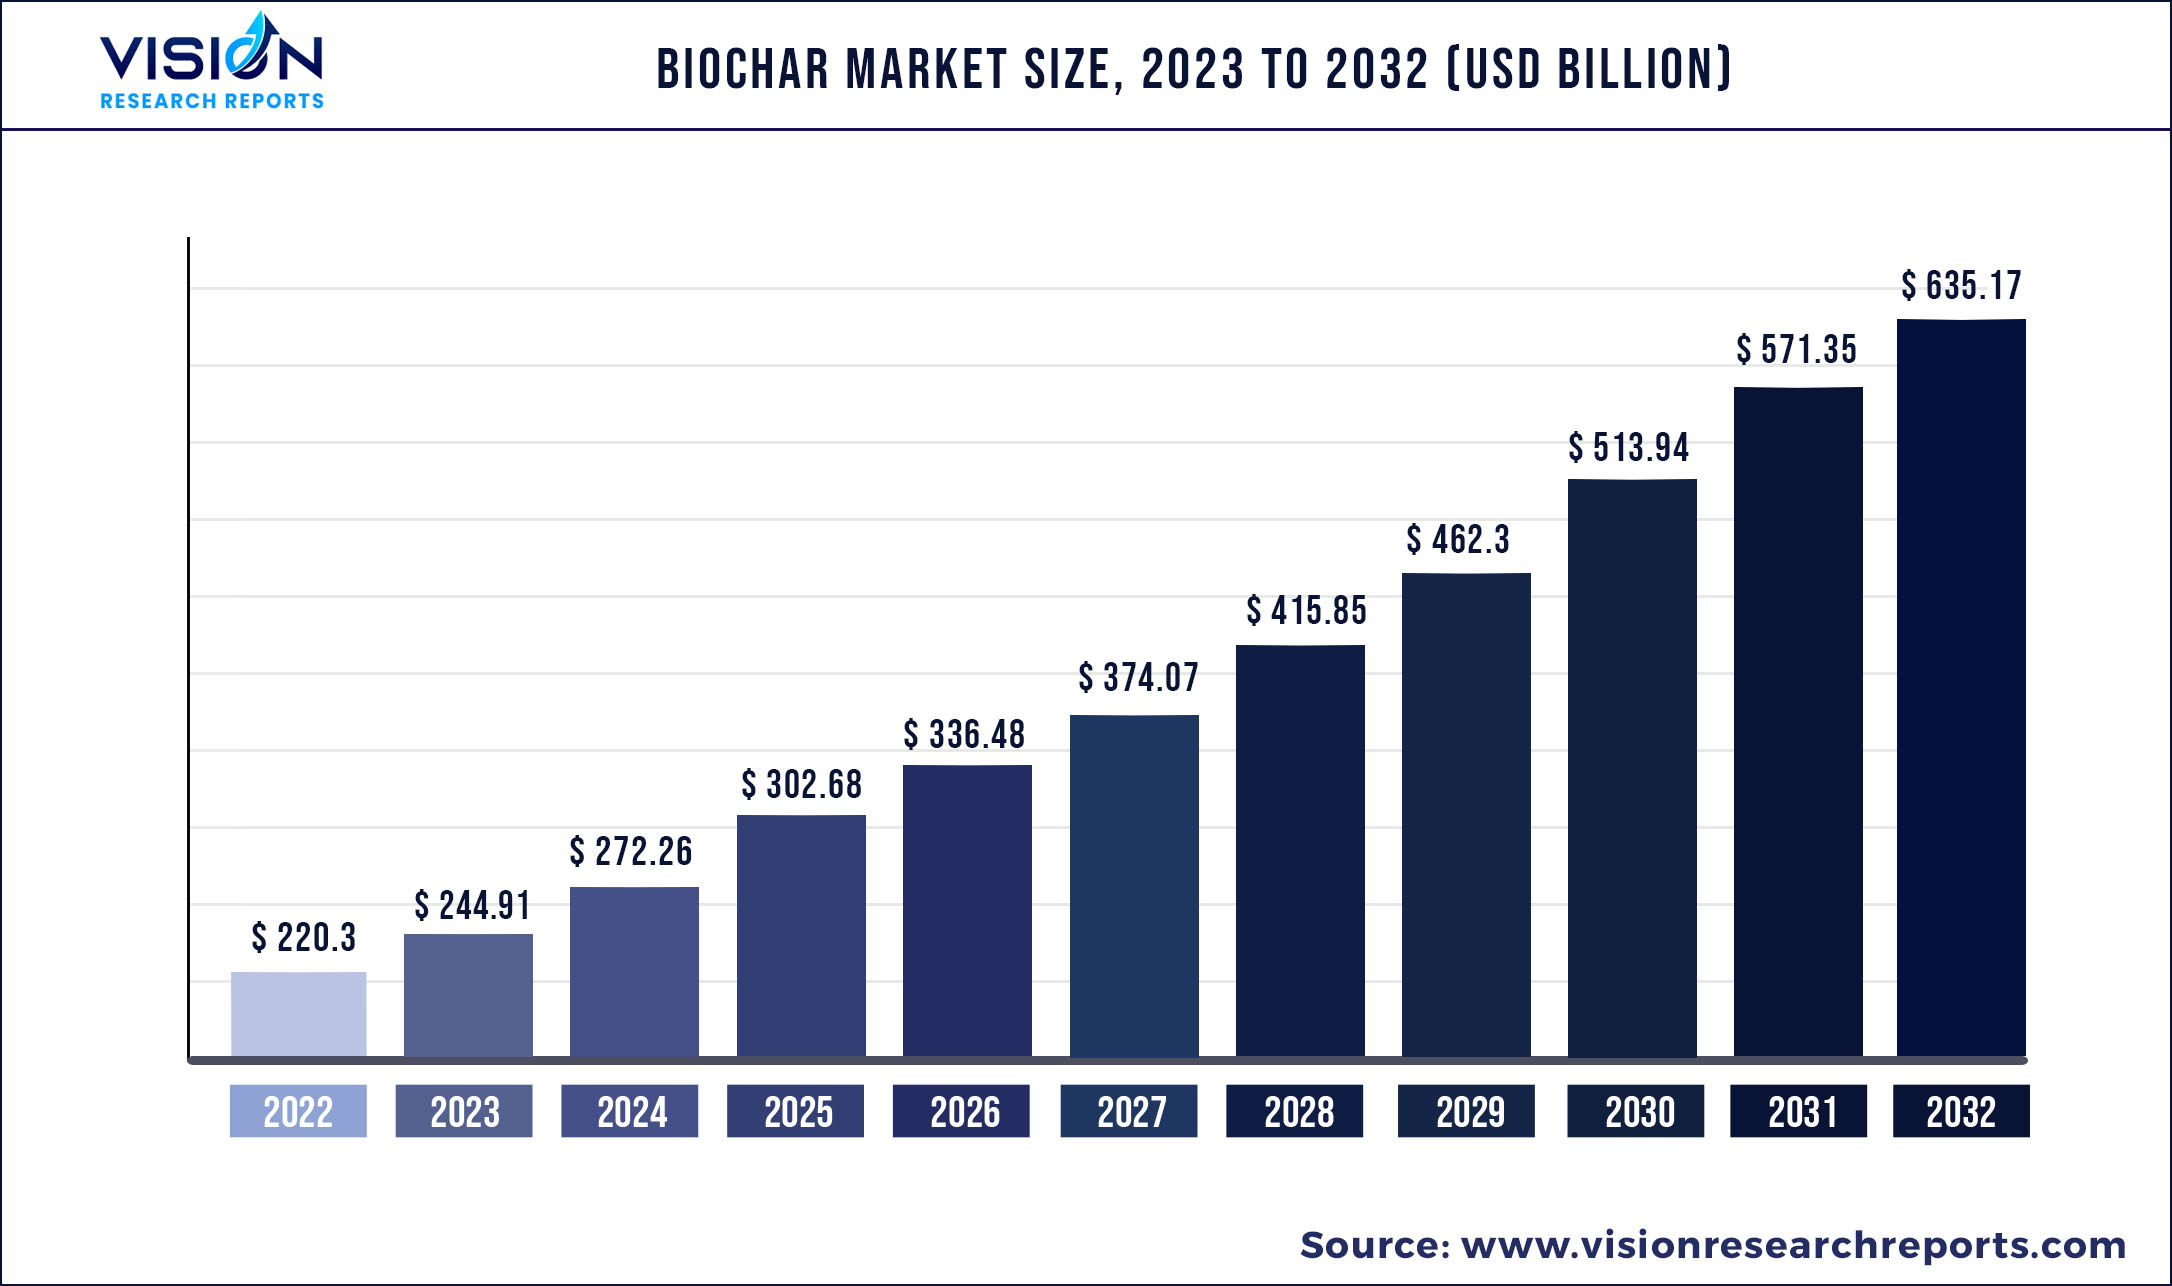 Biochar Market Size 2023 to 2032